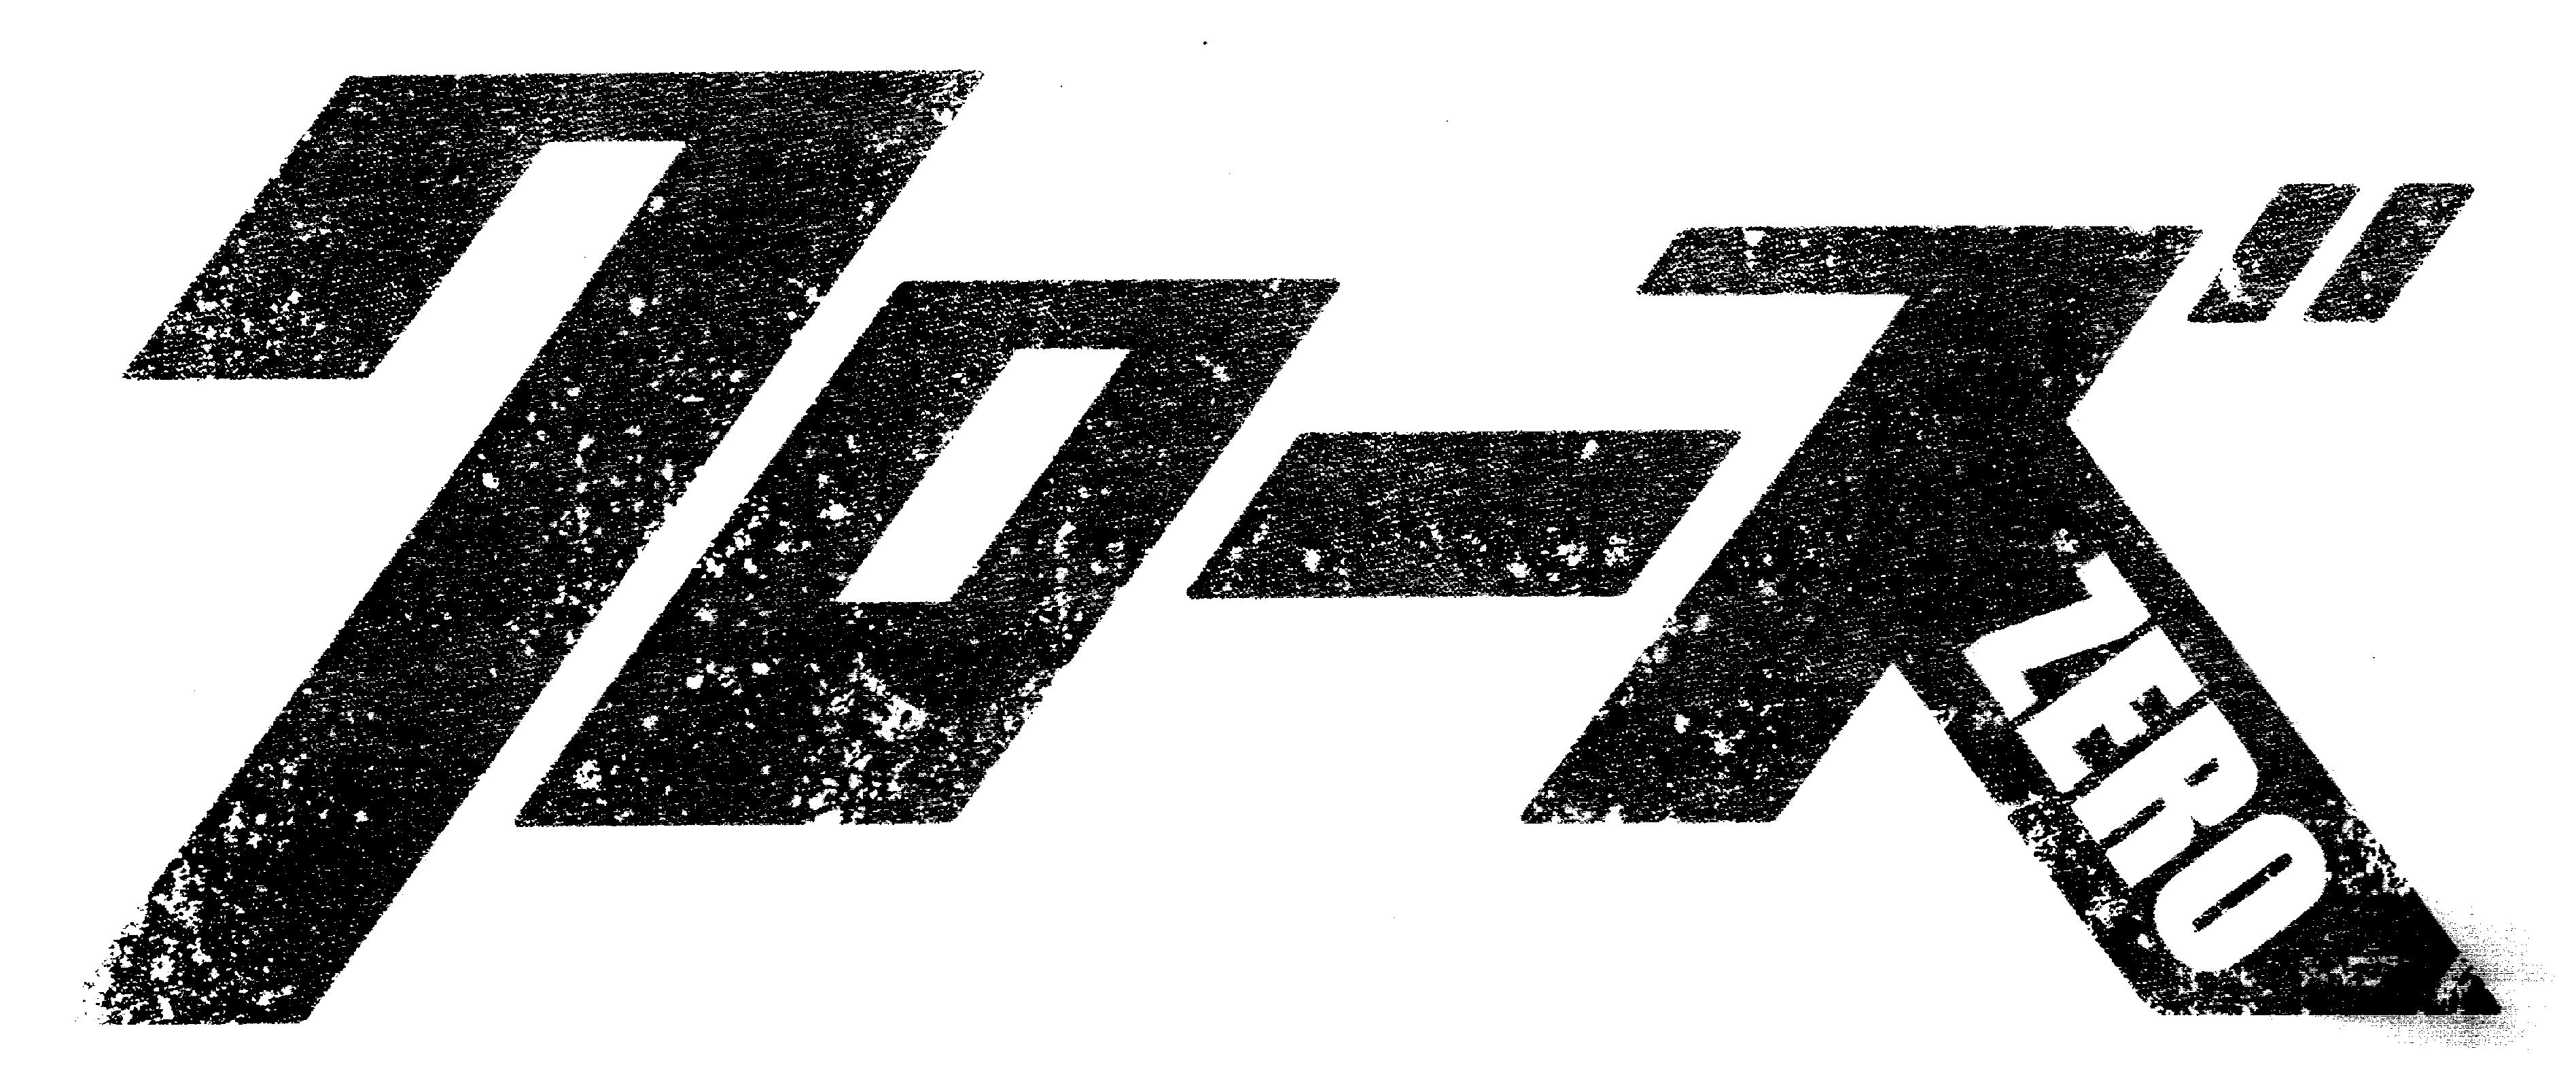 大ヒット映画 クローズ Zero が初の舞台化 劇団番町ボーイズ の本公演として11月30日 木 より上演 キャストオーディションも全国で開催 株式会社ソニー ミュージックエンタテインメントのプレスリリース